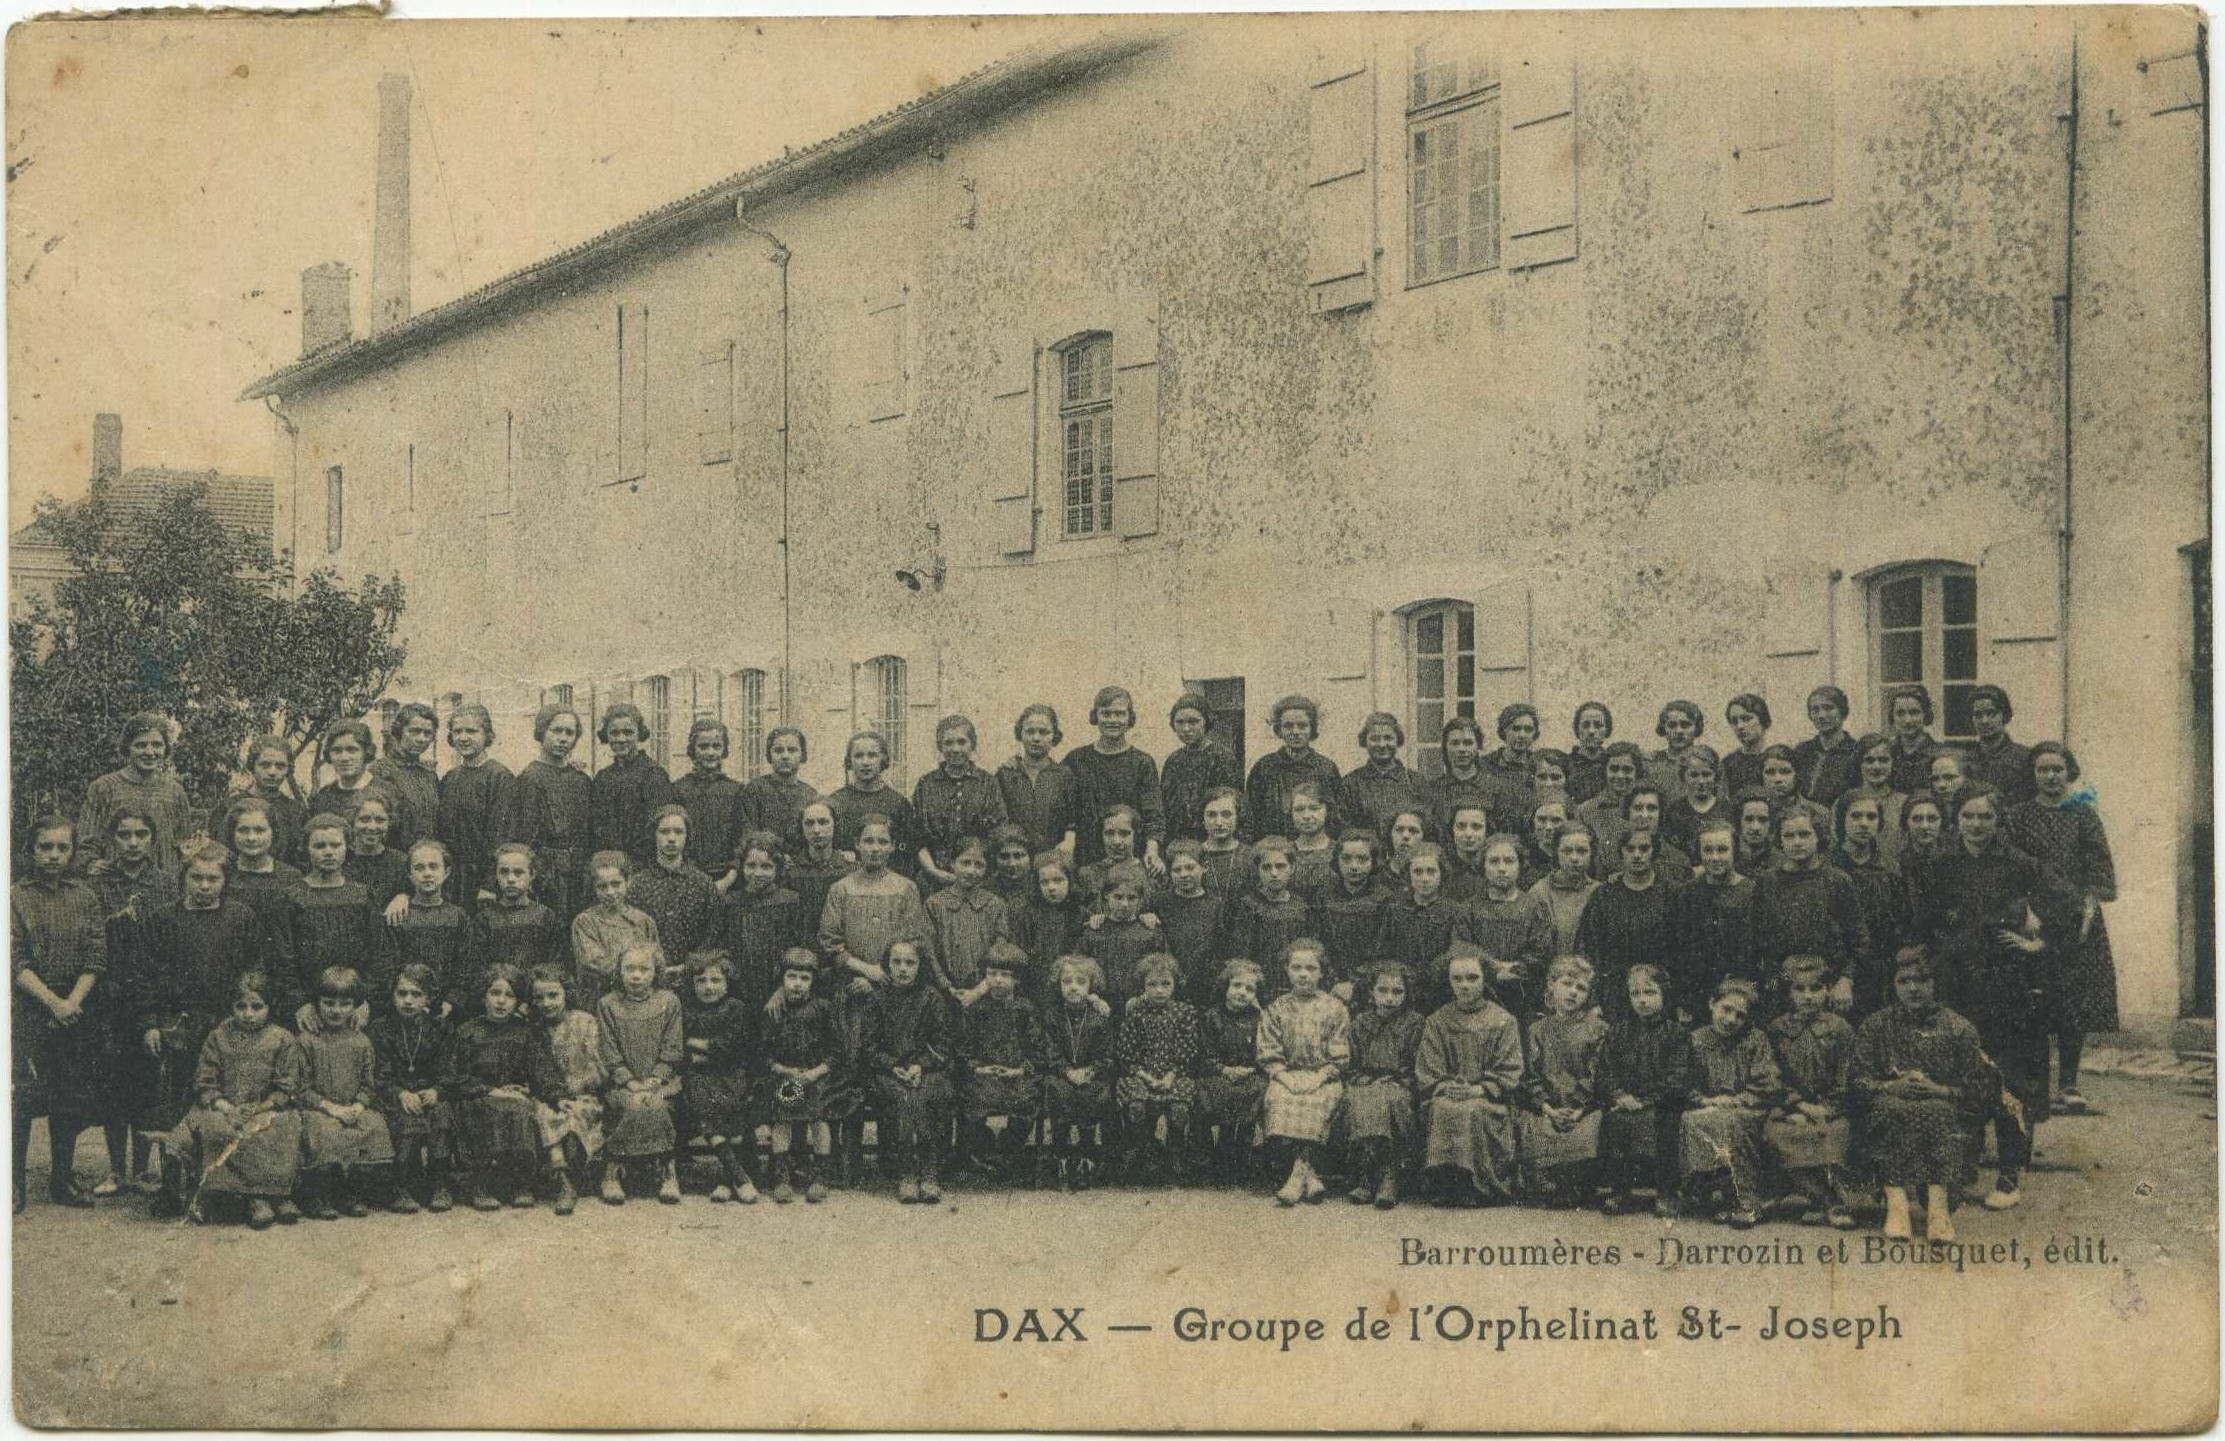 Dax - Groupe de l'Orphelinat St-Joseph